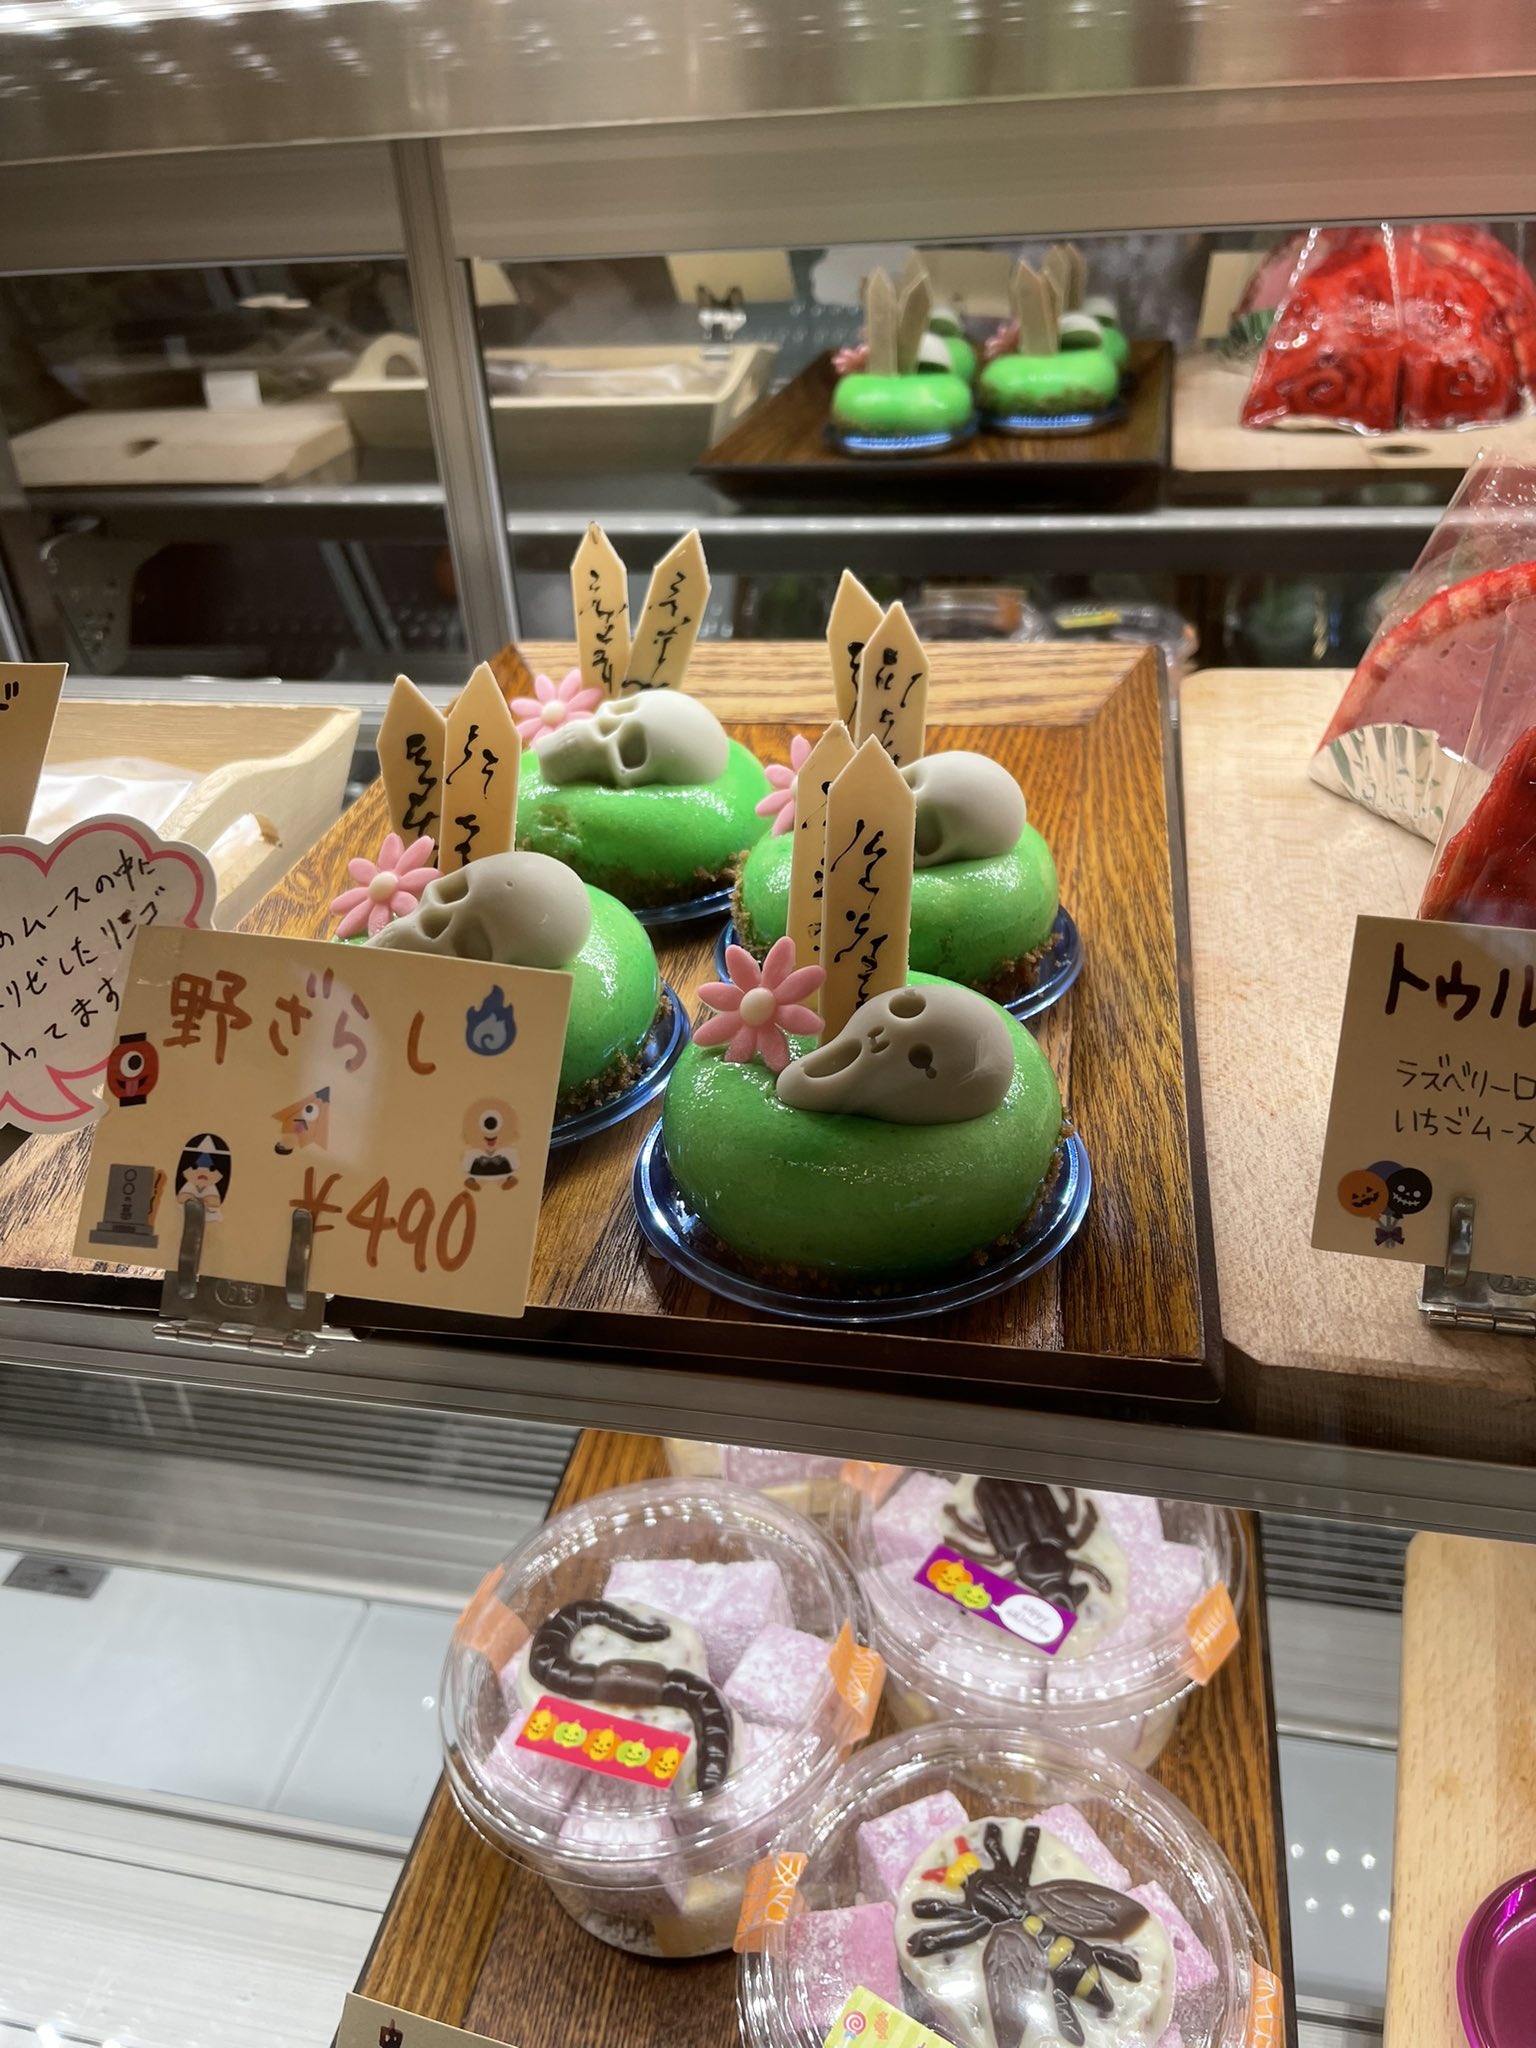 大阪で超可愛いケーキがいっぱいのケーキ屋さんが発見される くまニュース